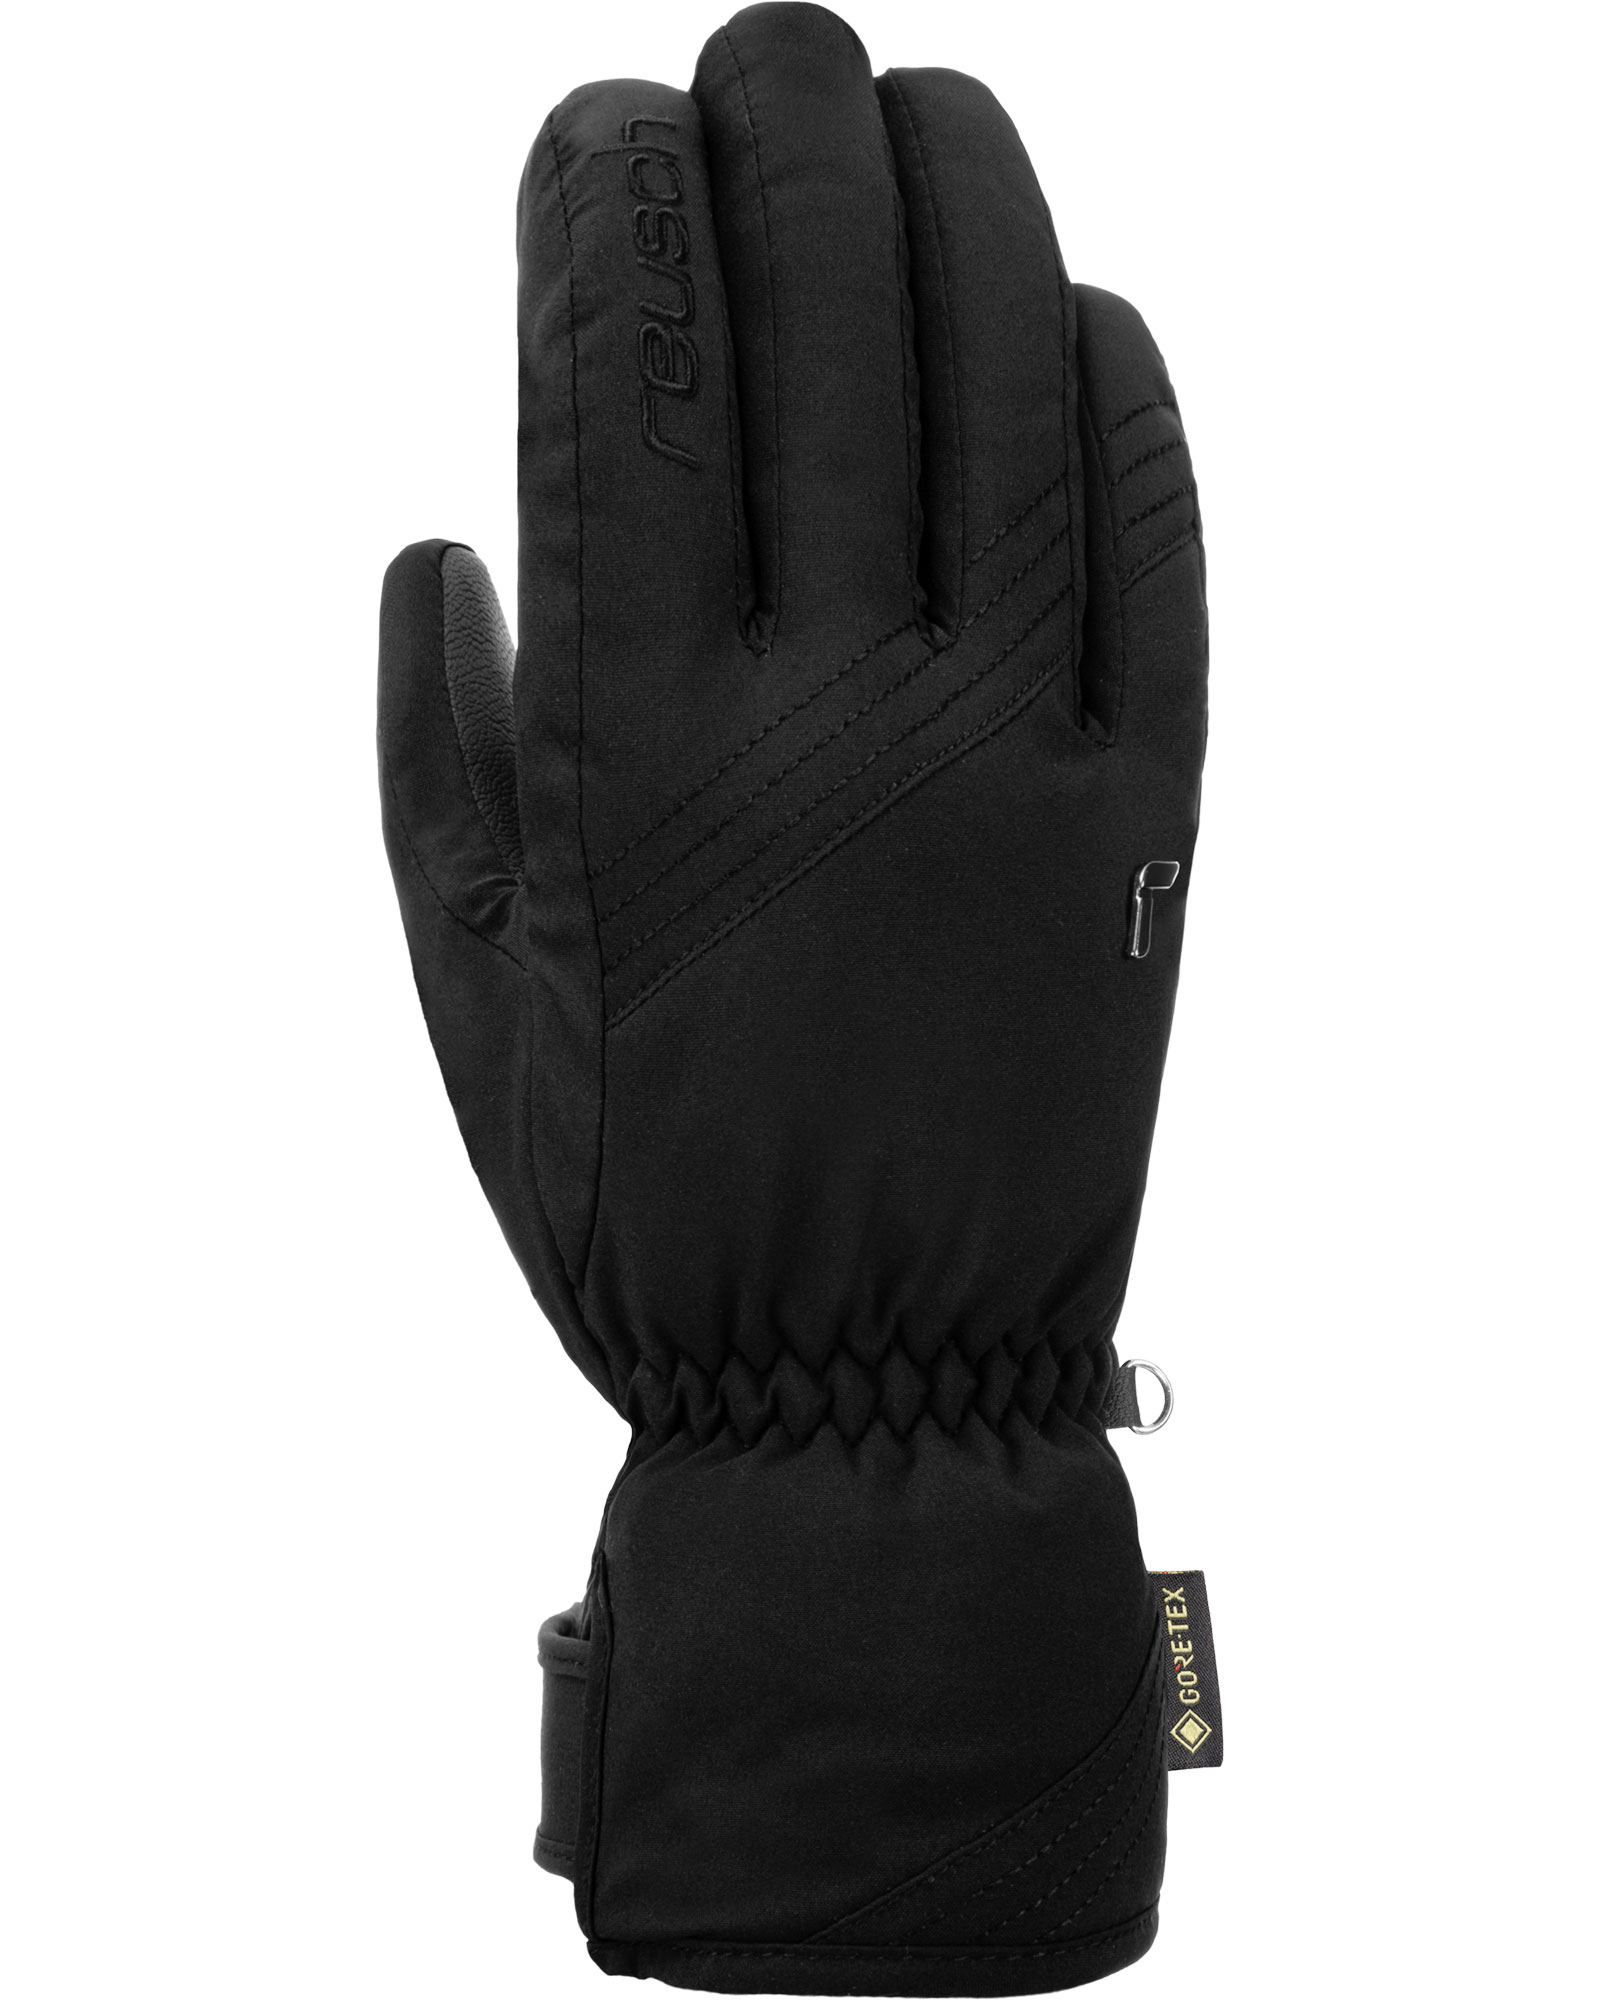 Reusch Susan GORE TEX Women’s Gloves - Black/white Size 6.5